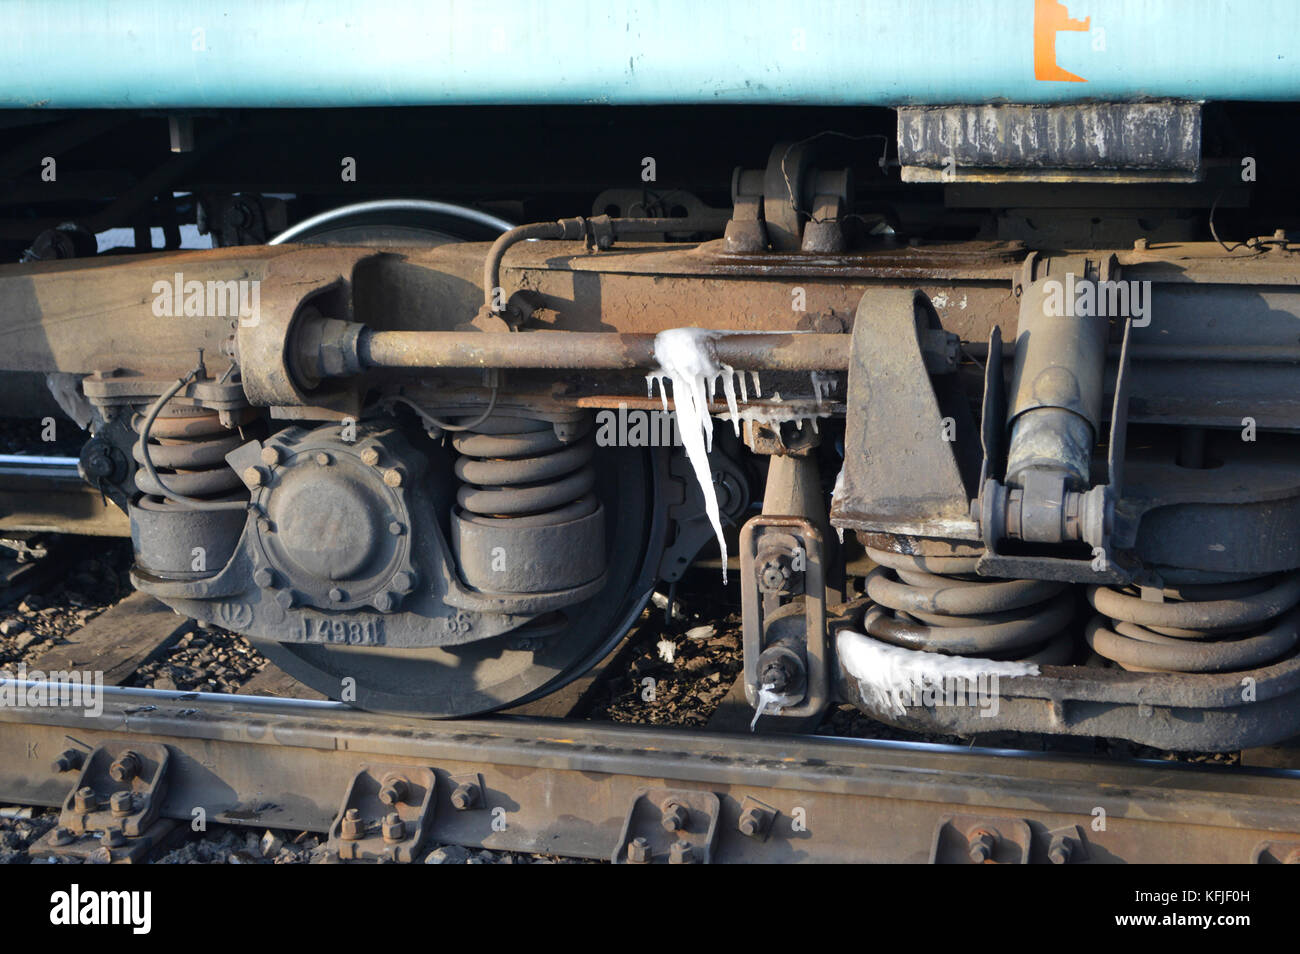 Russischer Zug mit Eis darauf. Gefroren. -25C Grad kalt. Aufgenommen während einer Reise im Platz-Kart der dritten Klasse in Kasachstan. Stockfoto